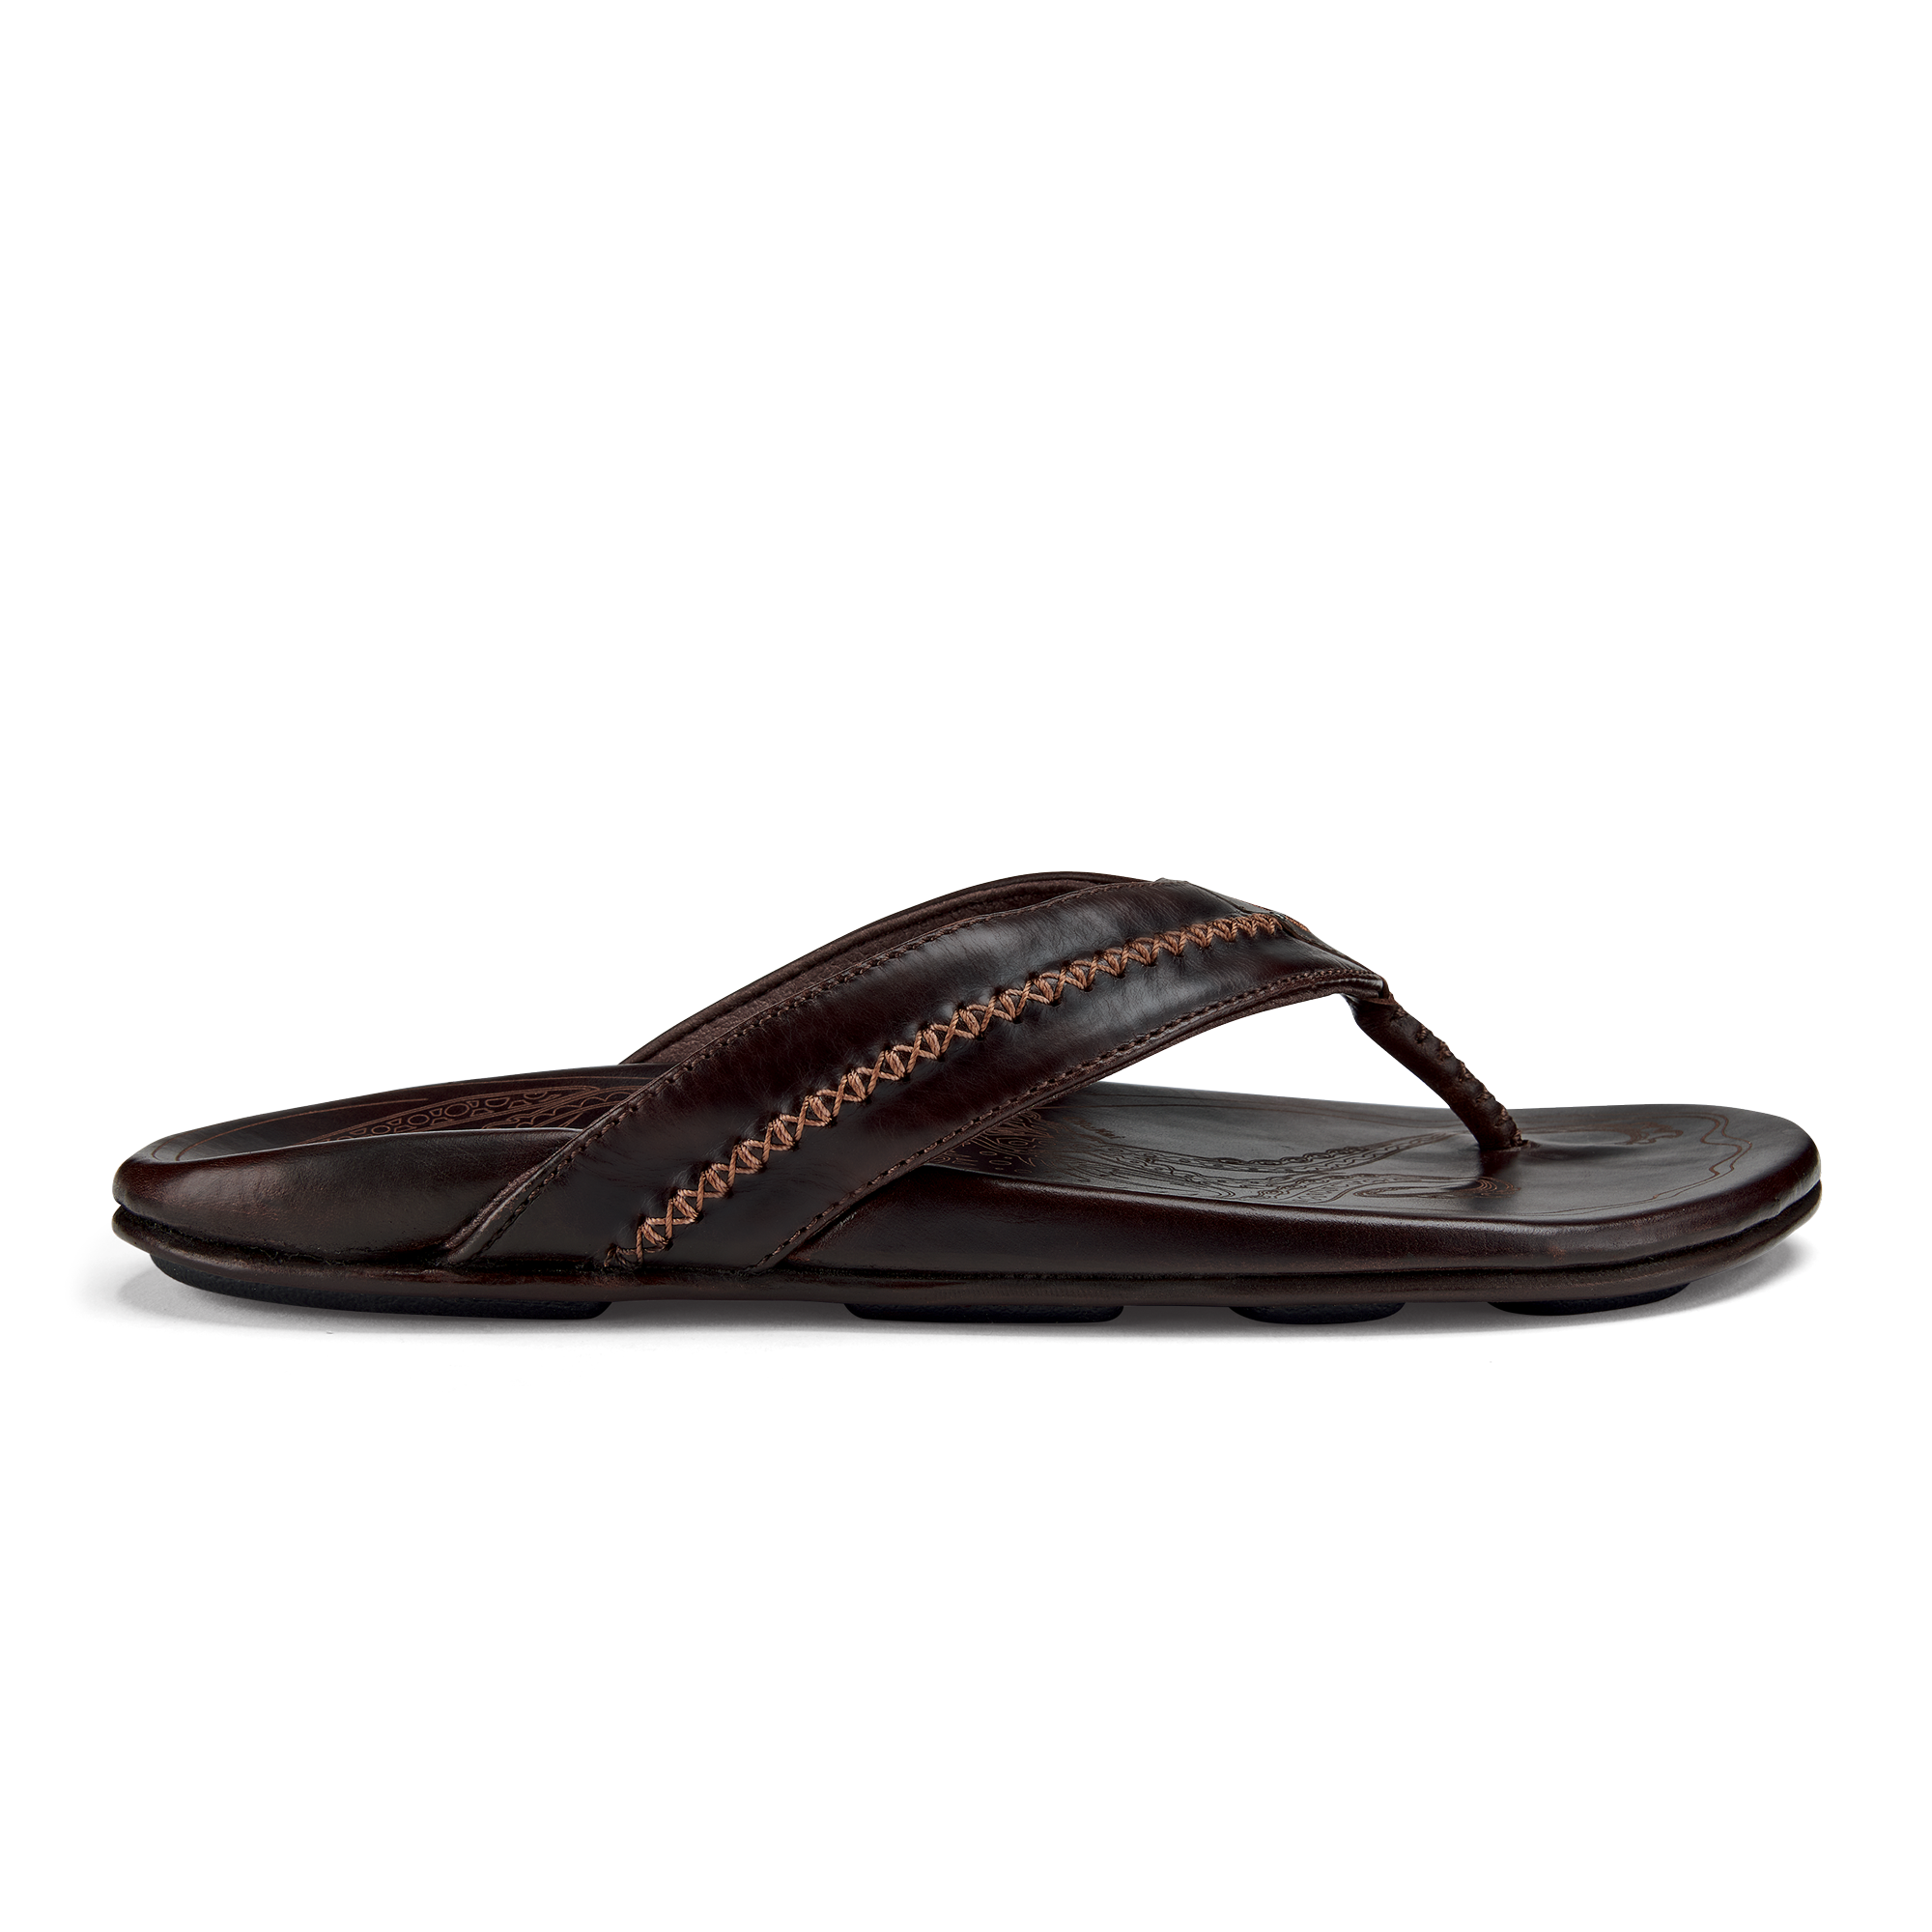 Mea Ola Men's Leather Beach Sandals - Dark Java | OluKai – OluKai 